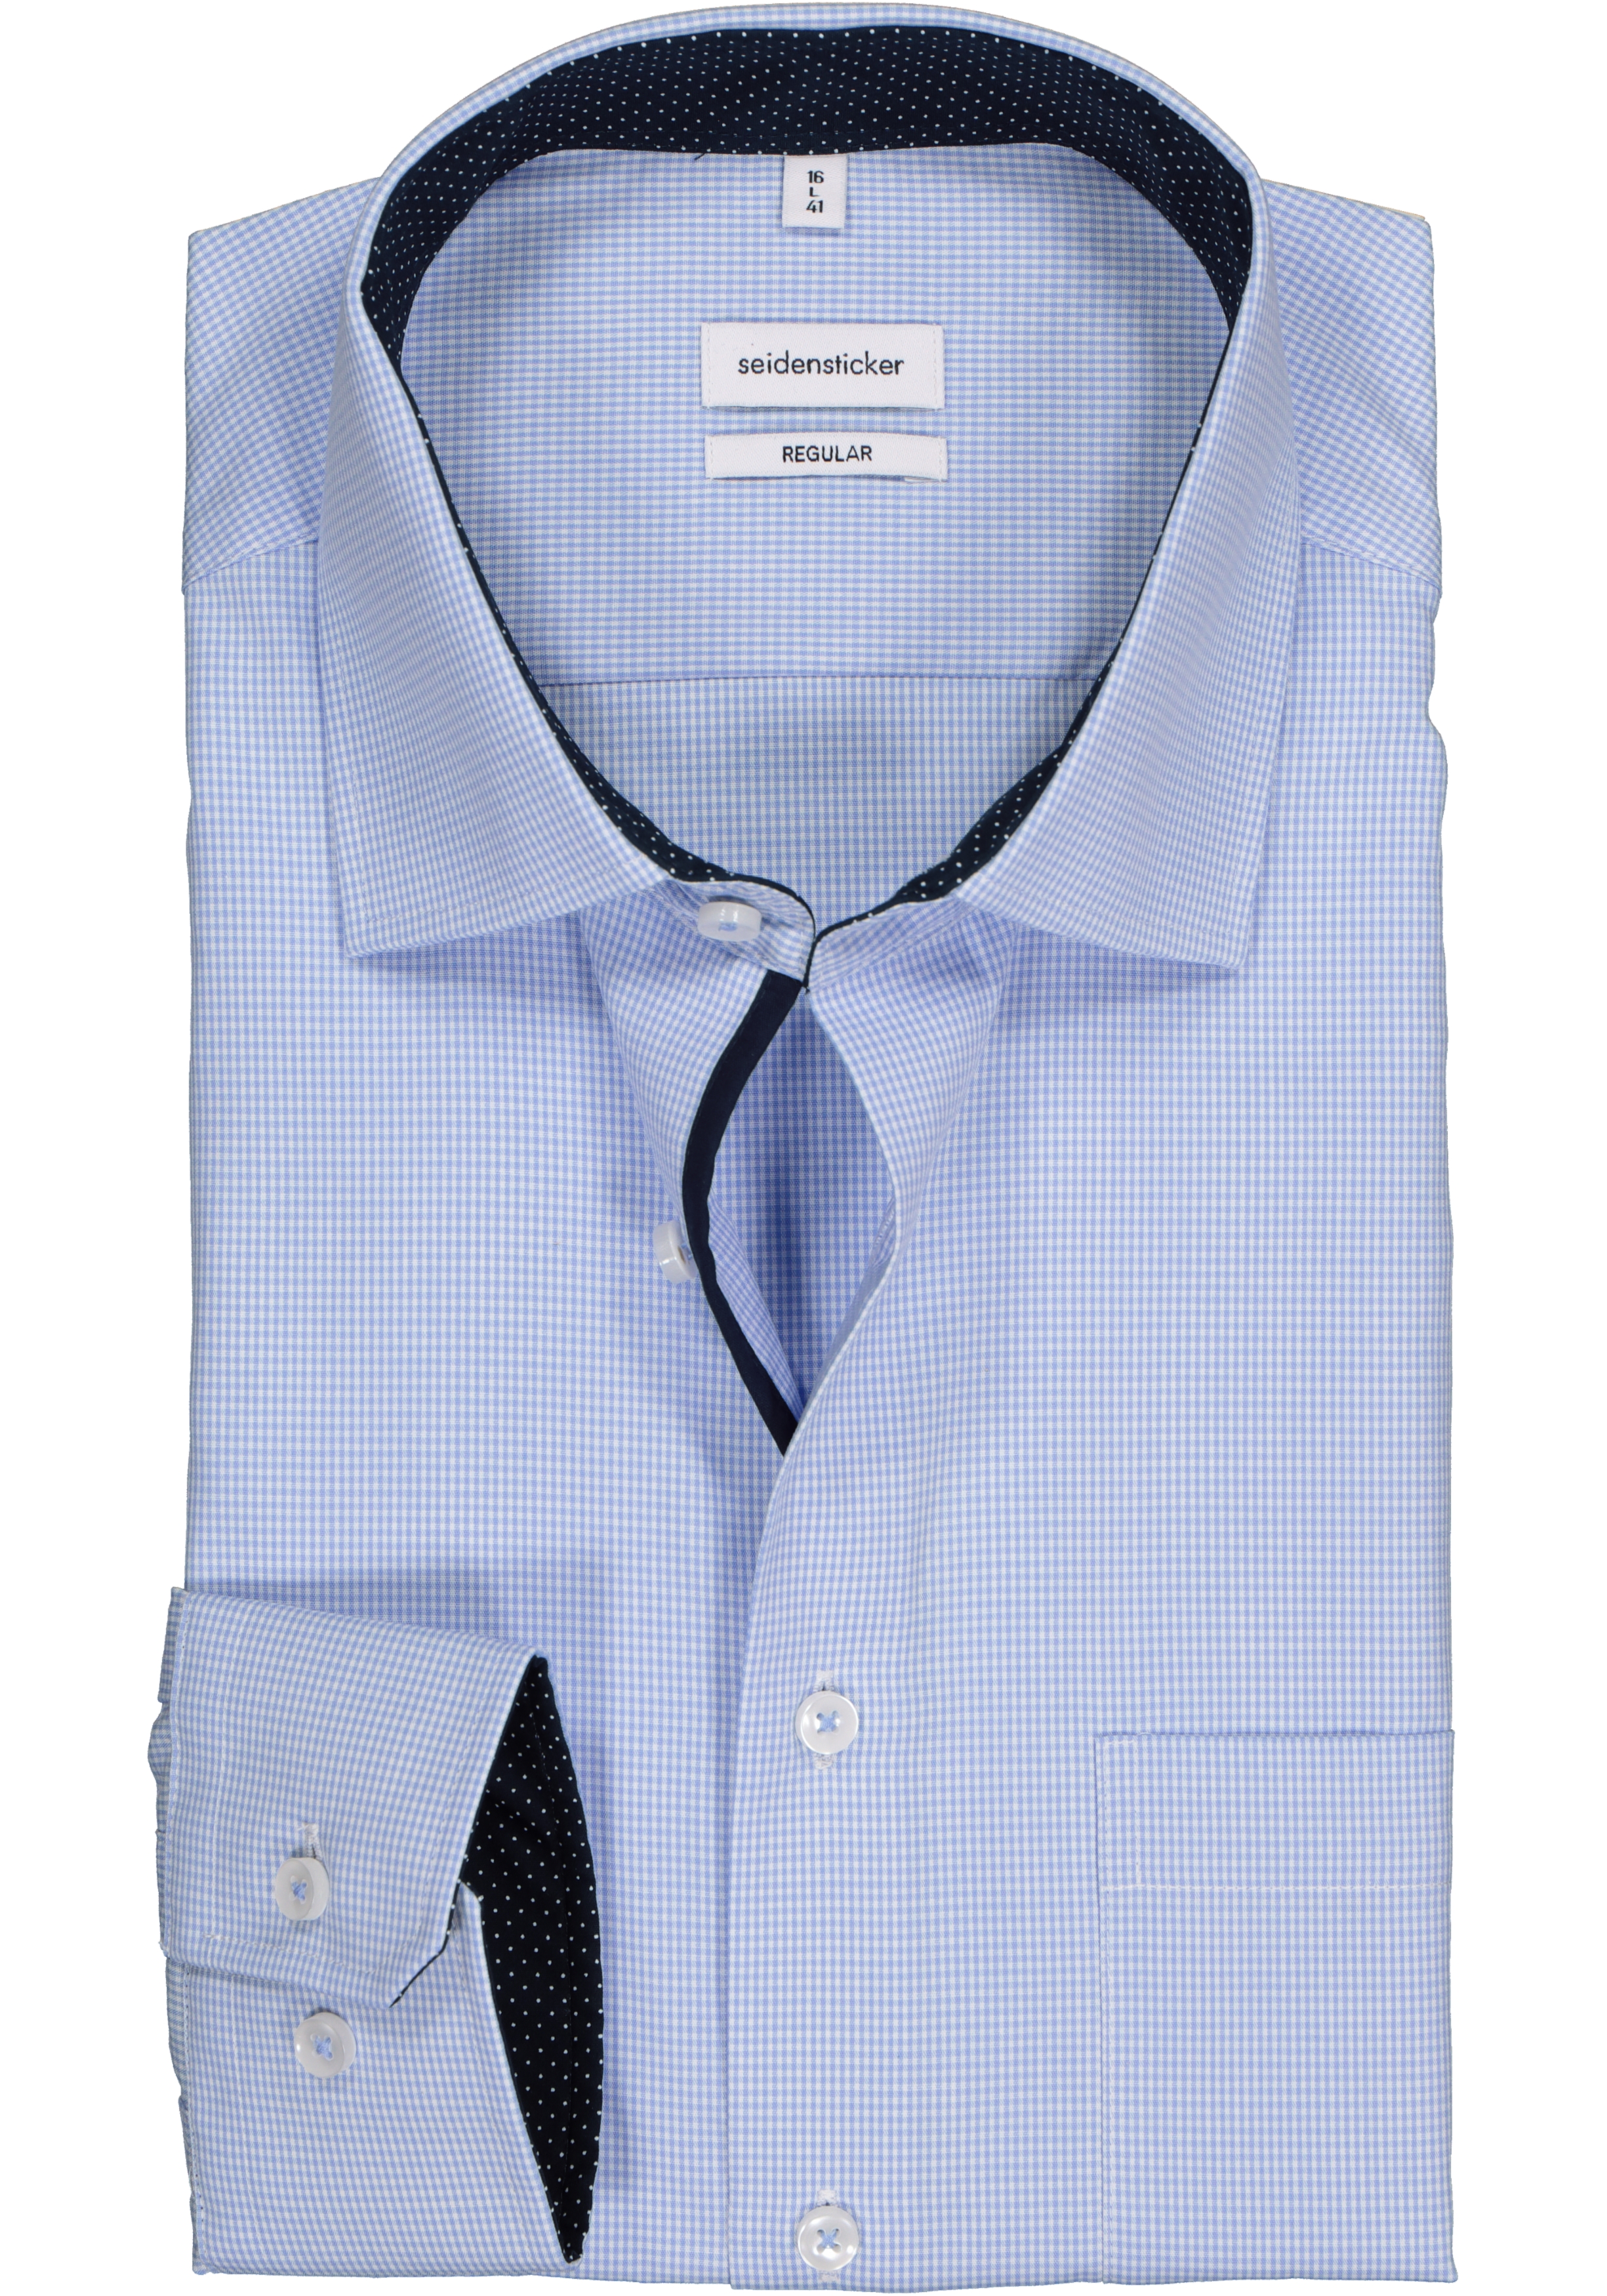 Seidensticker regular fit overhemd, blauw met wit geruit (contrast)